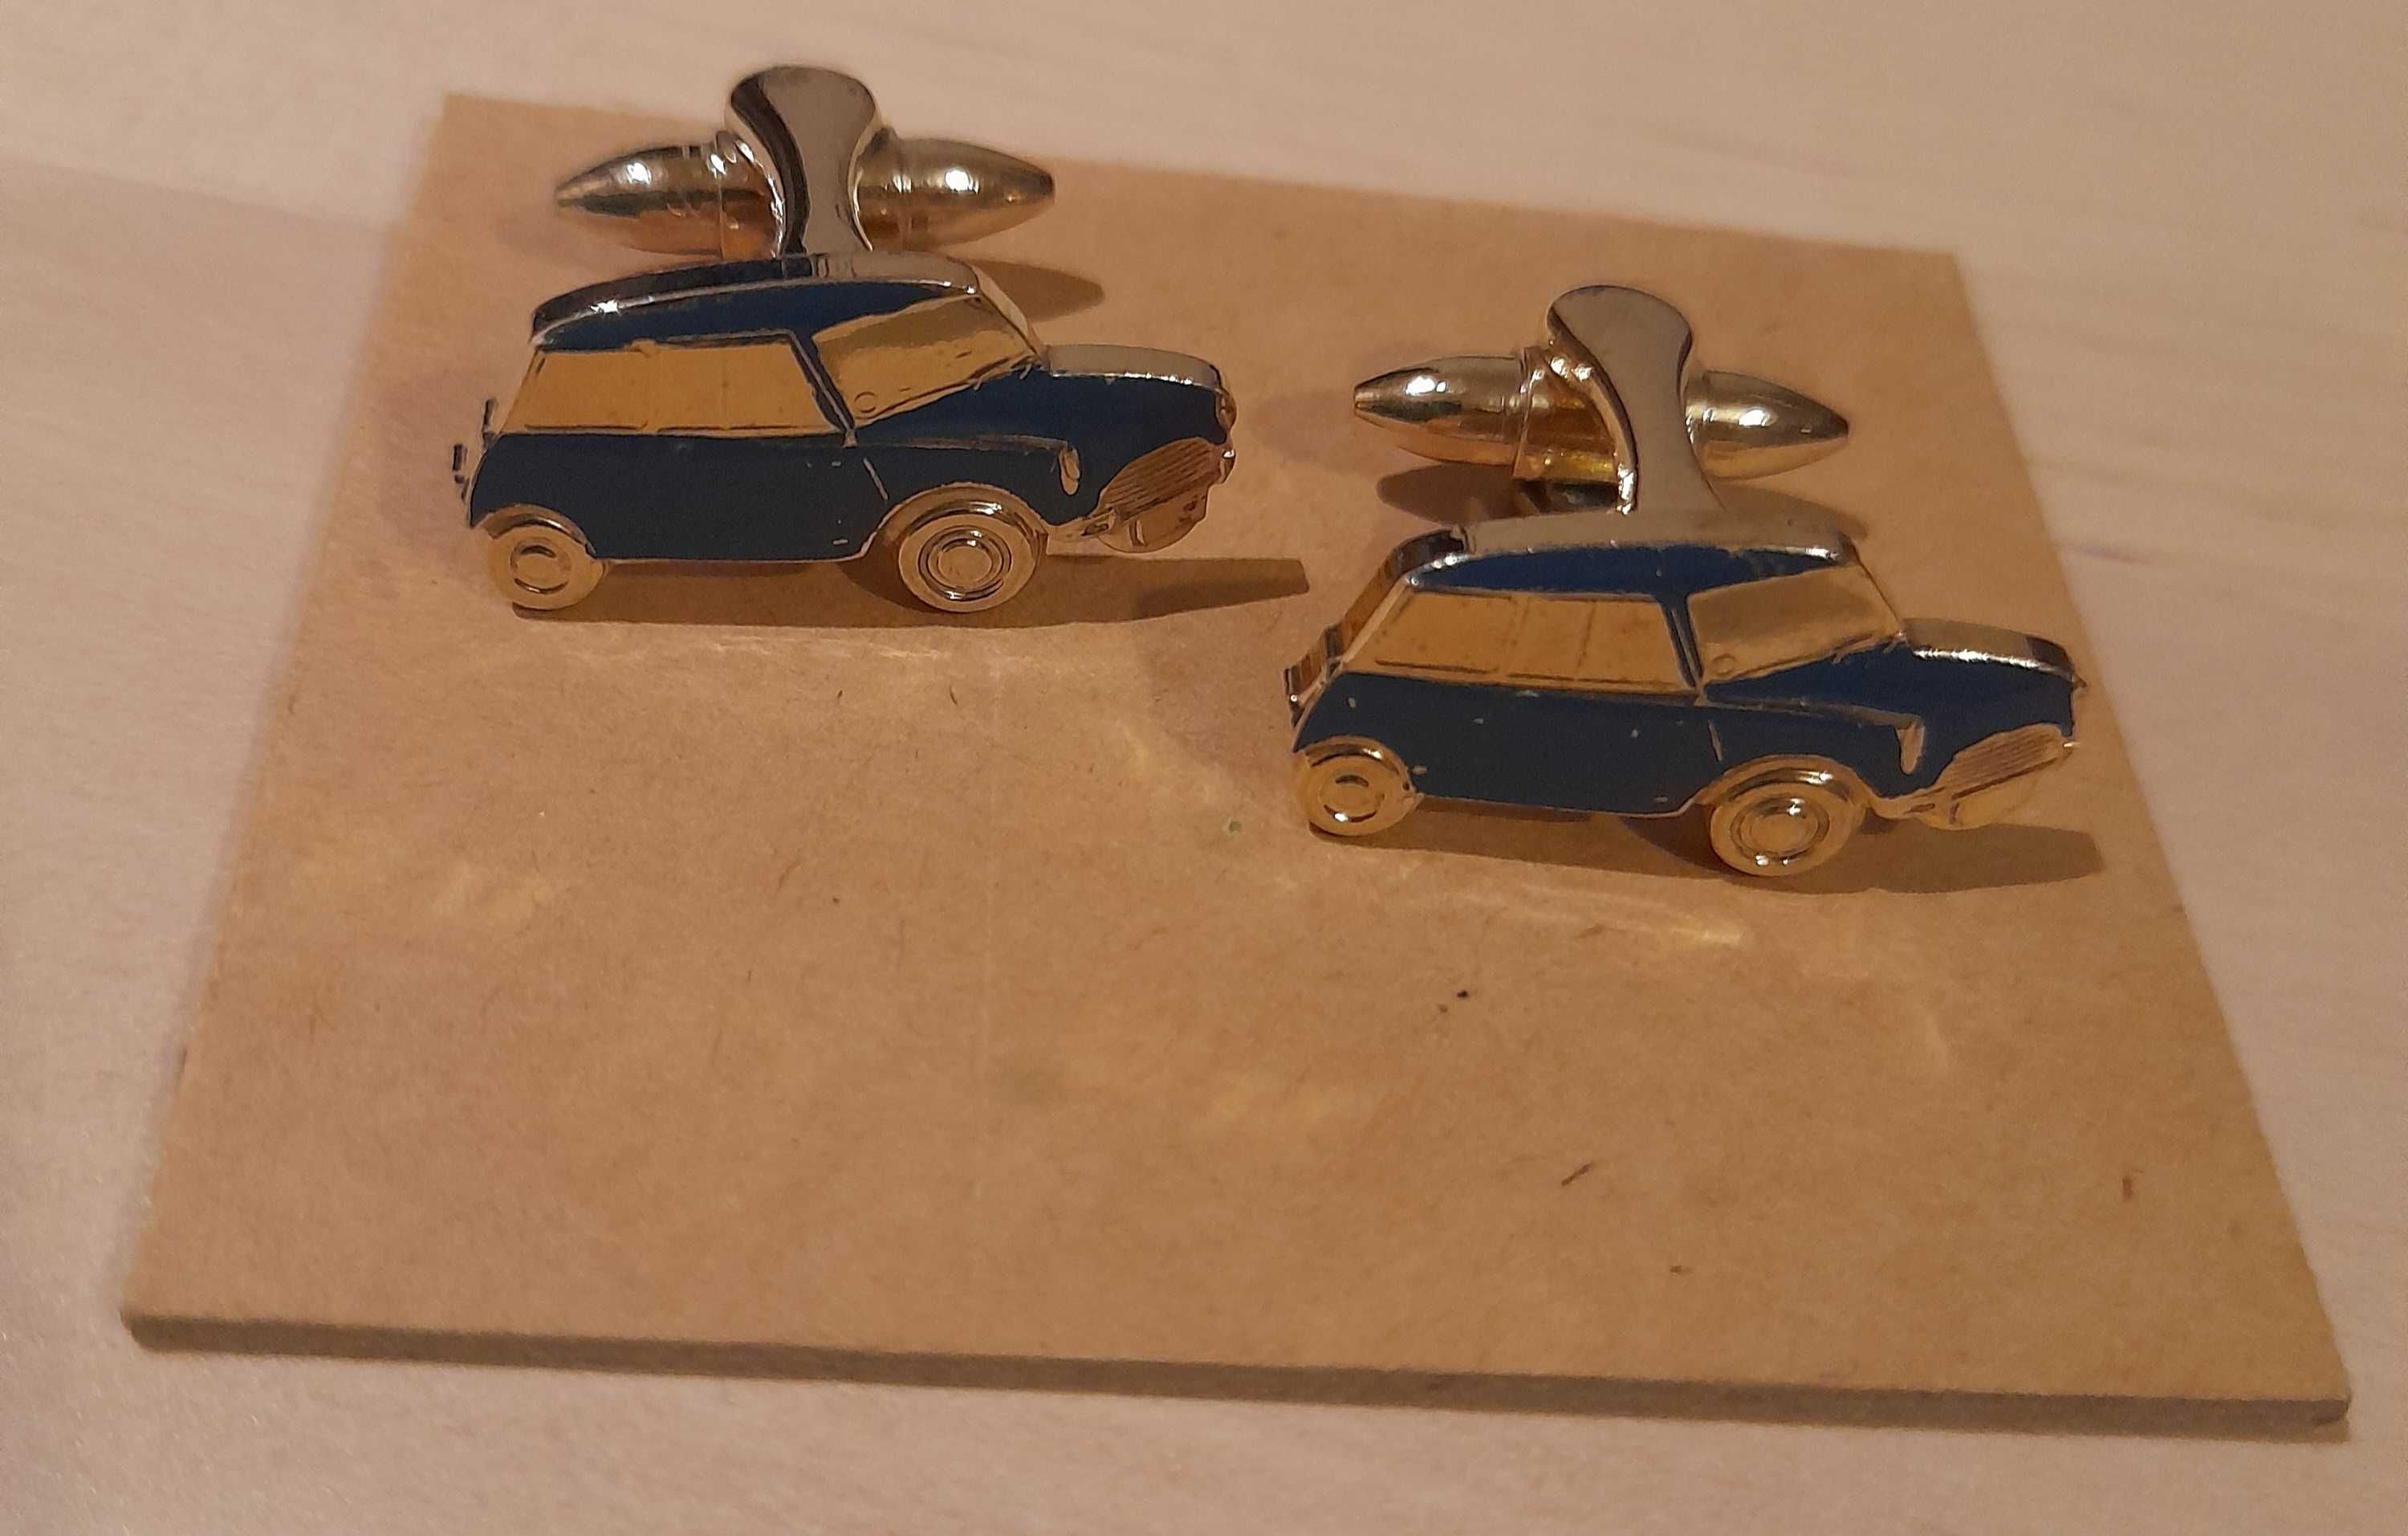 Mini azul - Botões de punho de colecção. Originais